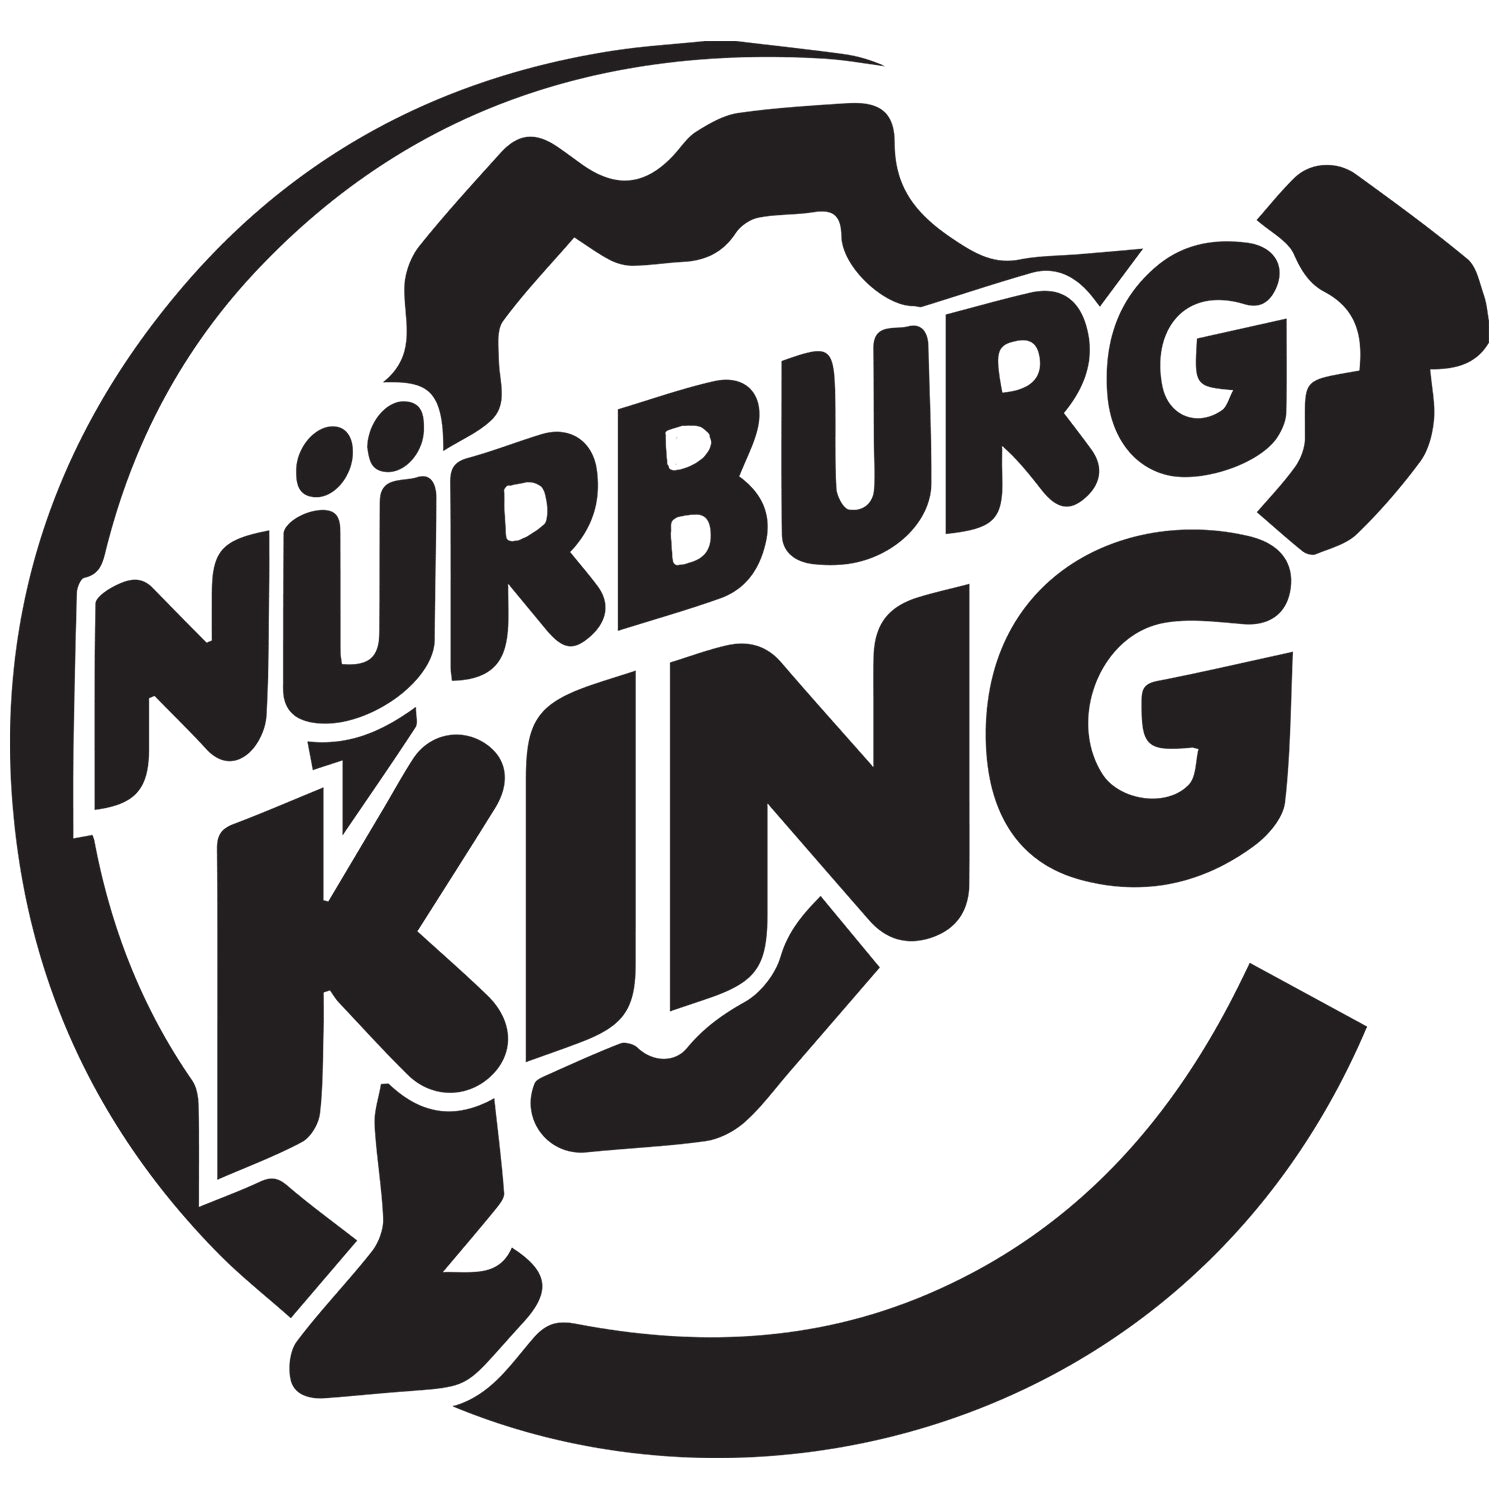 Nurburg King T Shirt